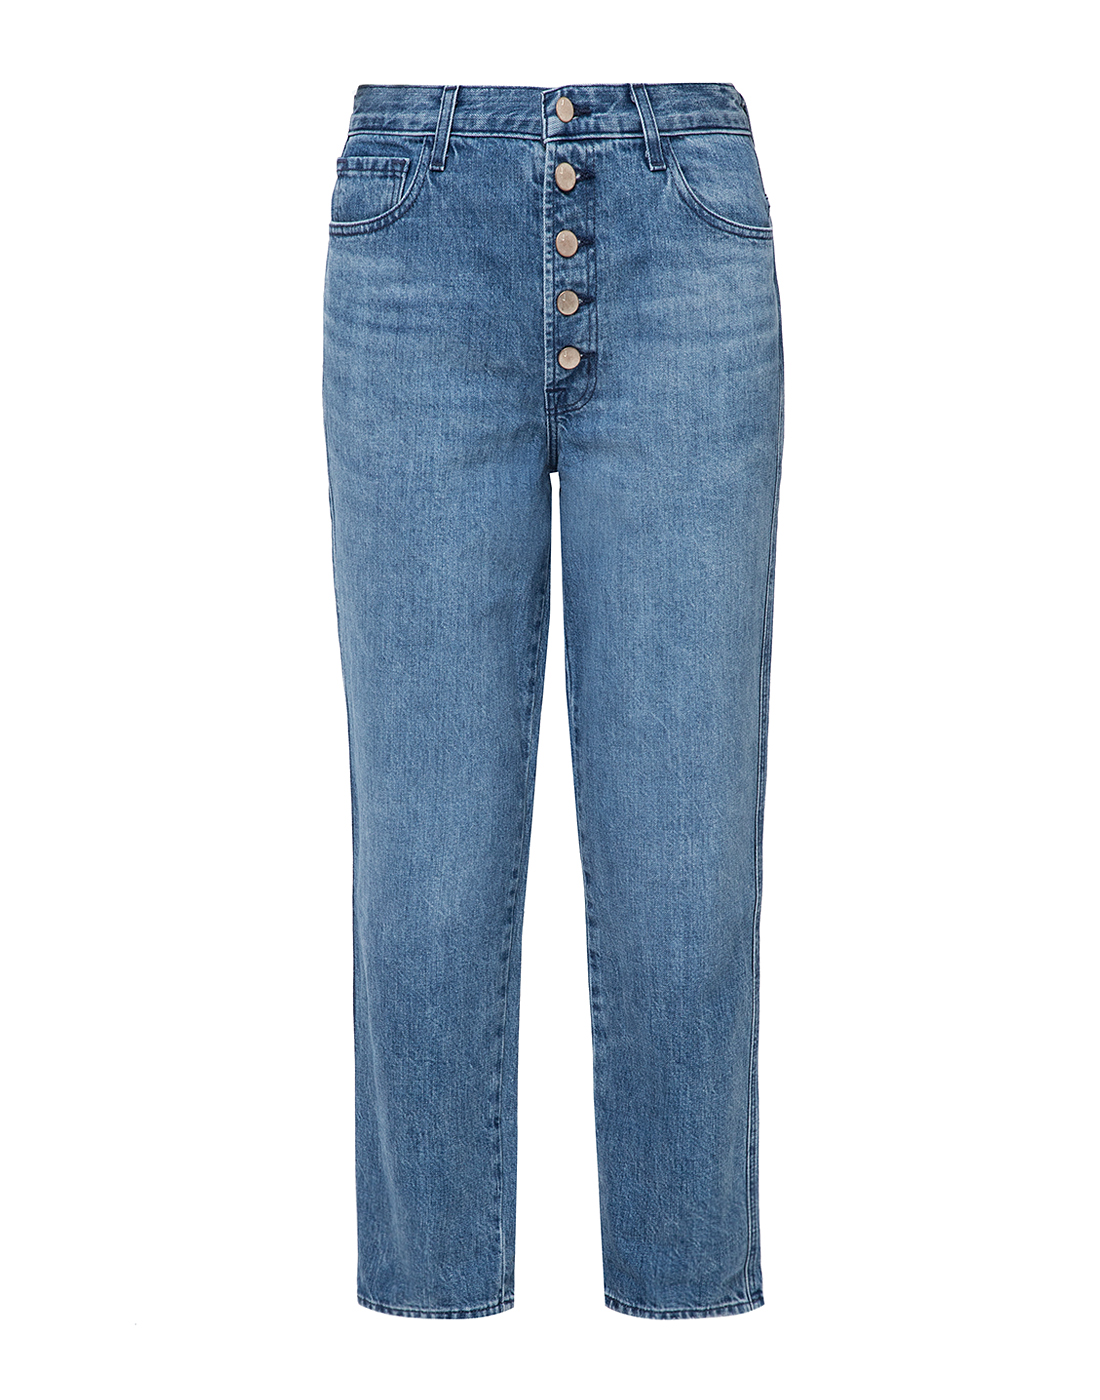 Женские голубые джинсы J BRAND SJB002779-1